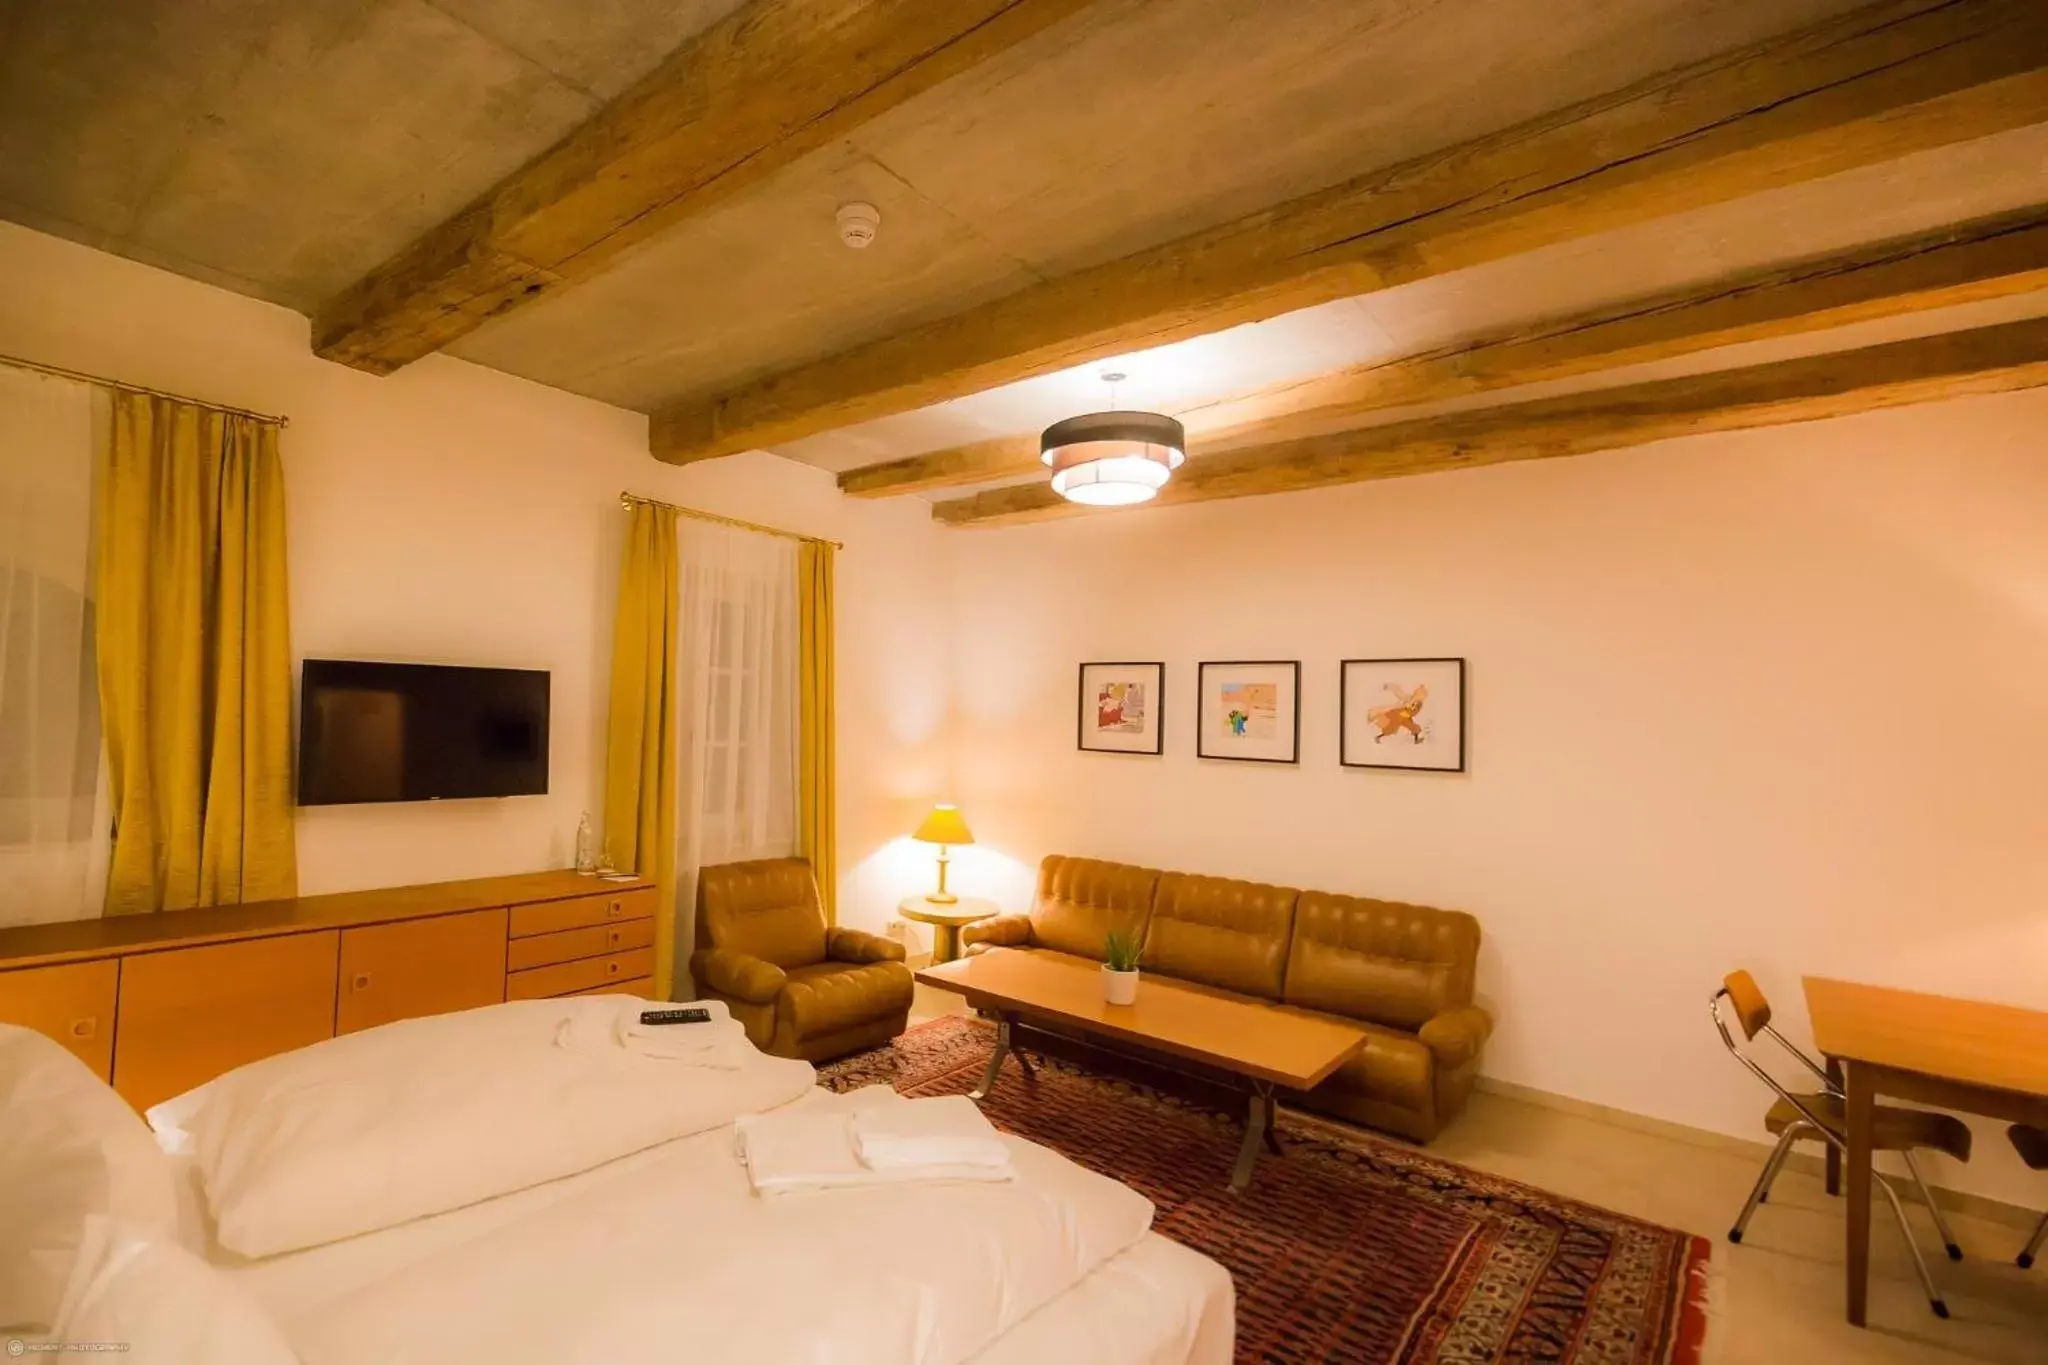 Bedroom in Hotel Luis Stadl